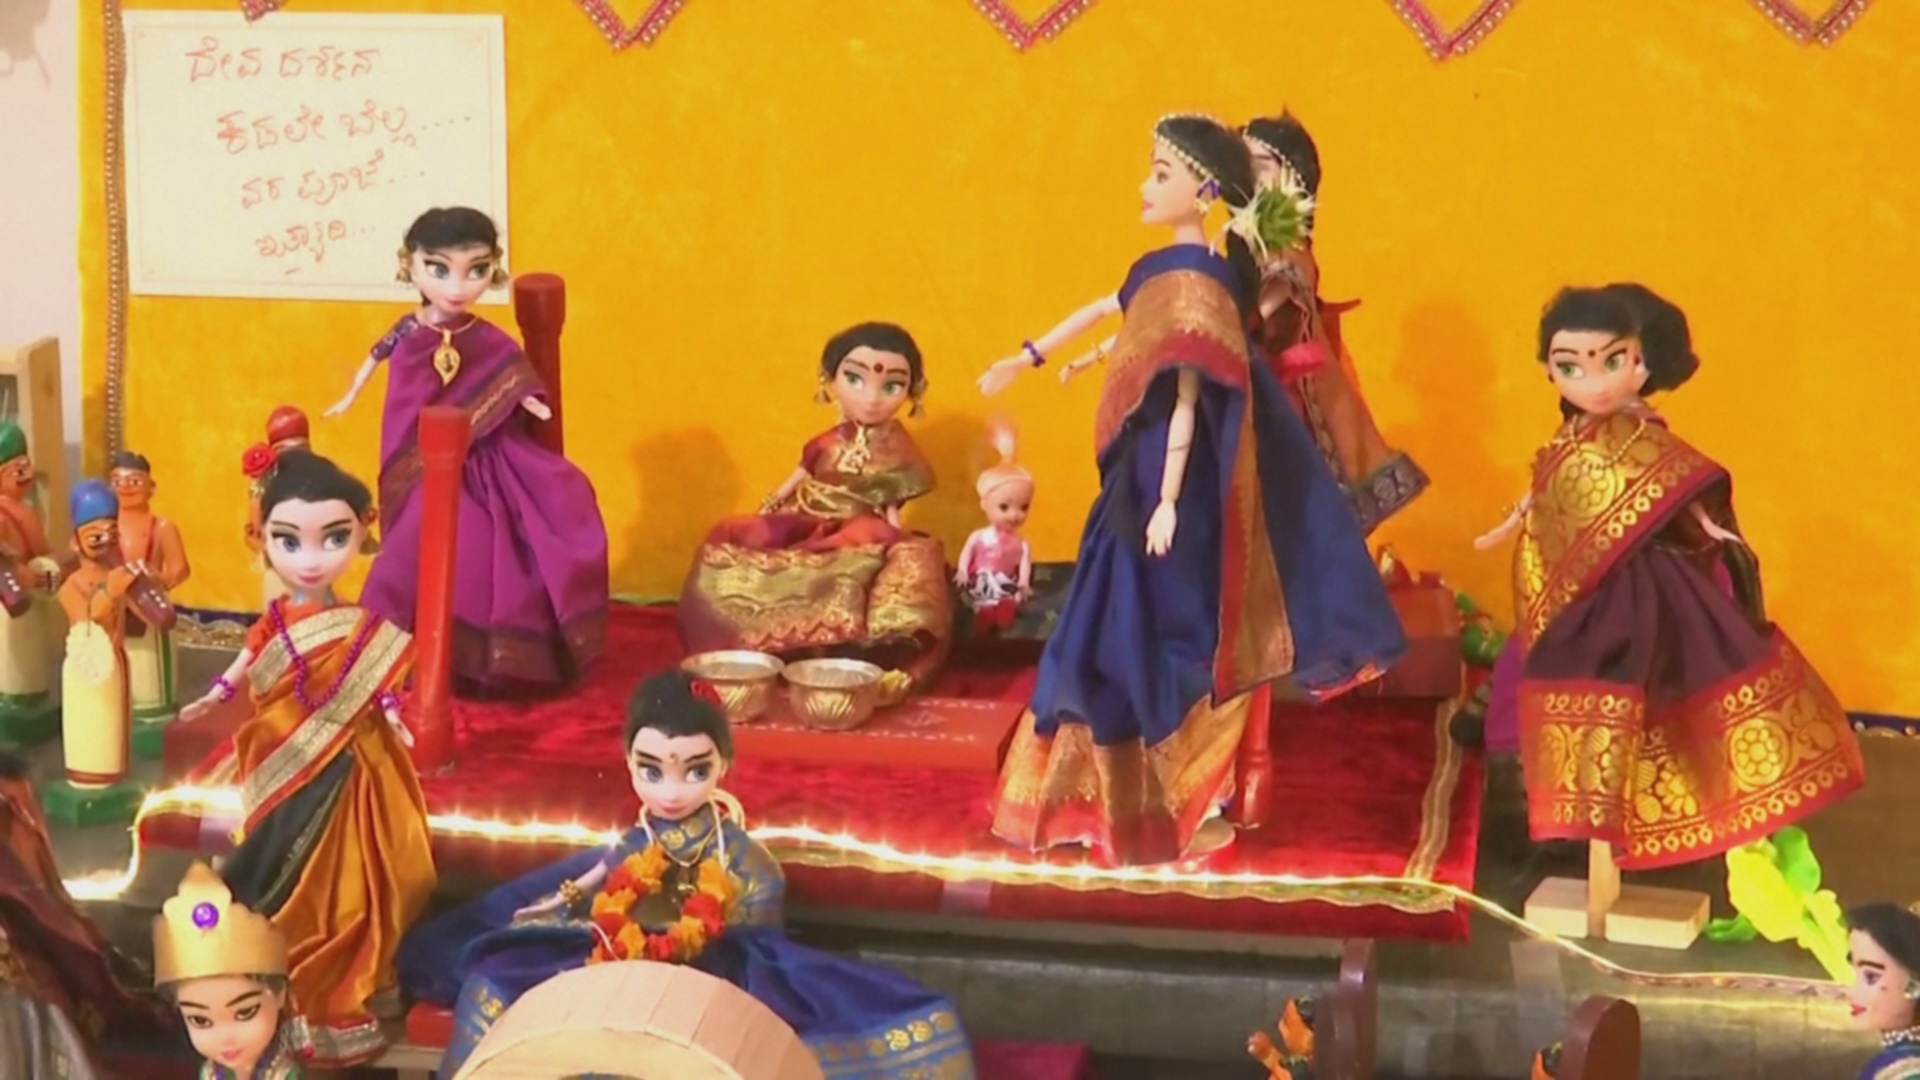 Индианка собрала 10 000 традиционных кукол и выставляет их раз в году